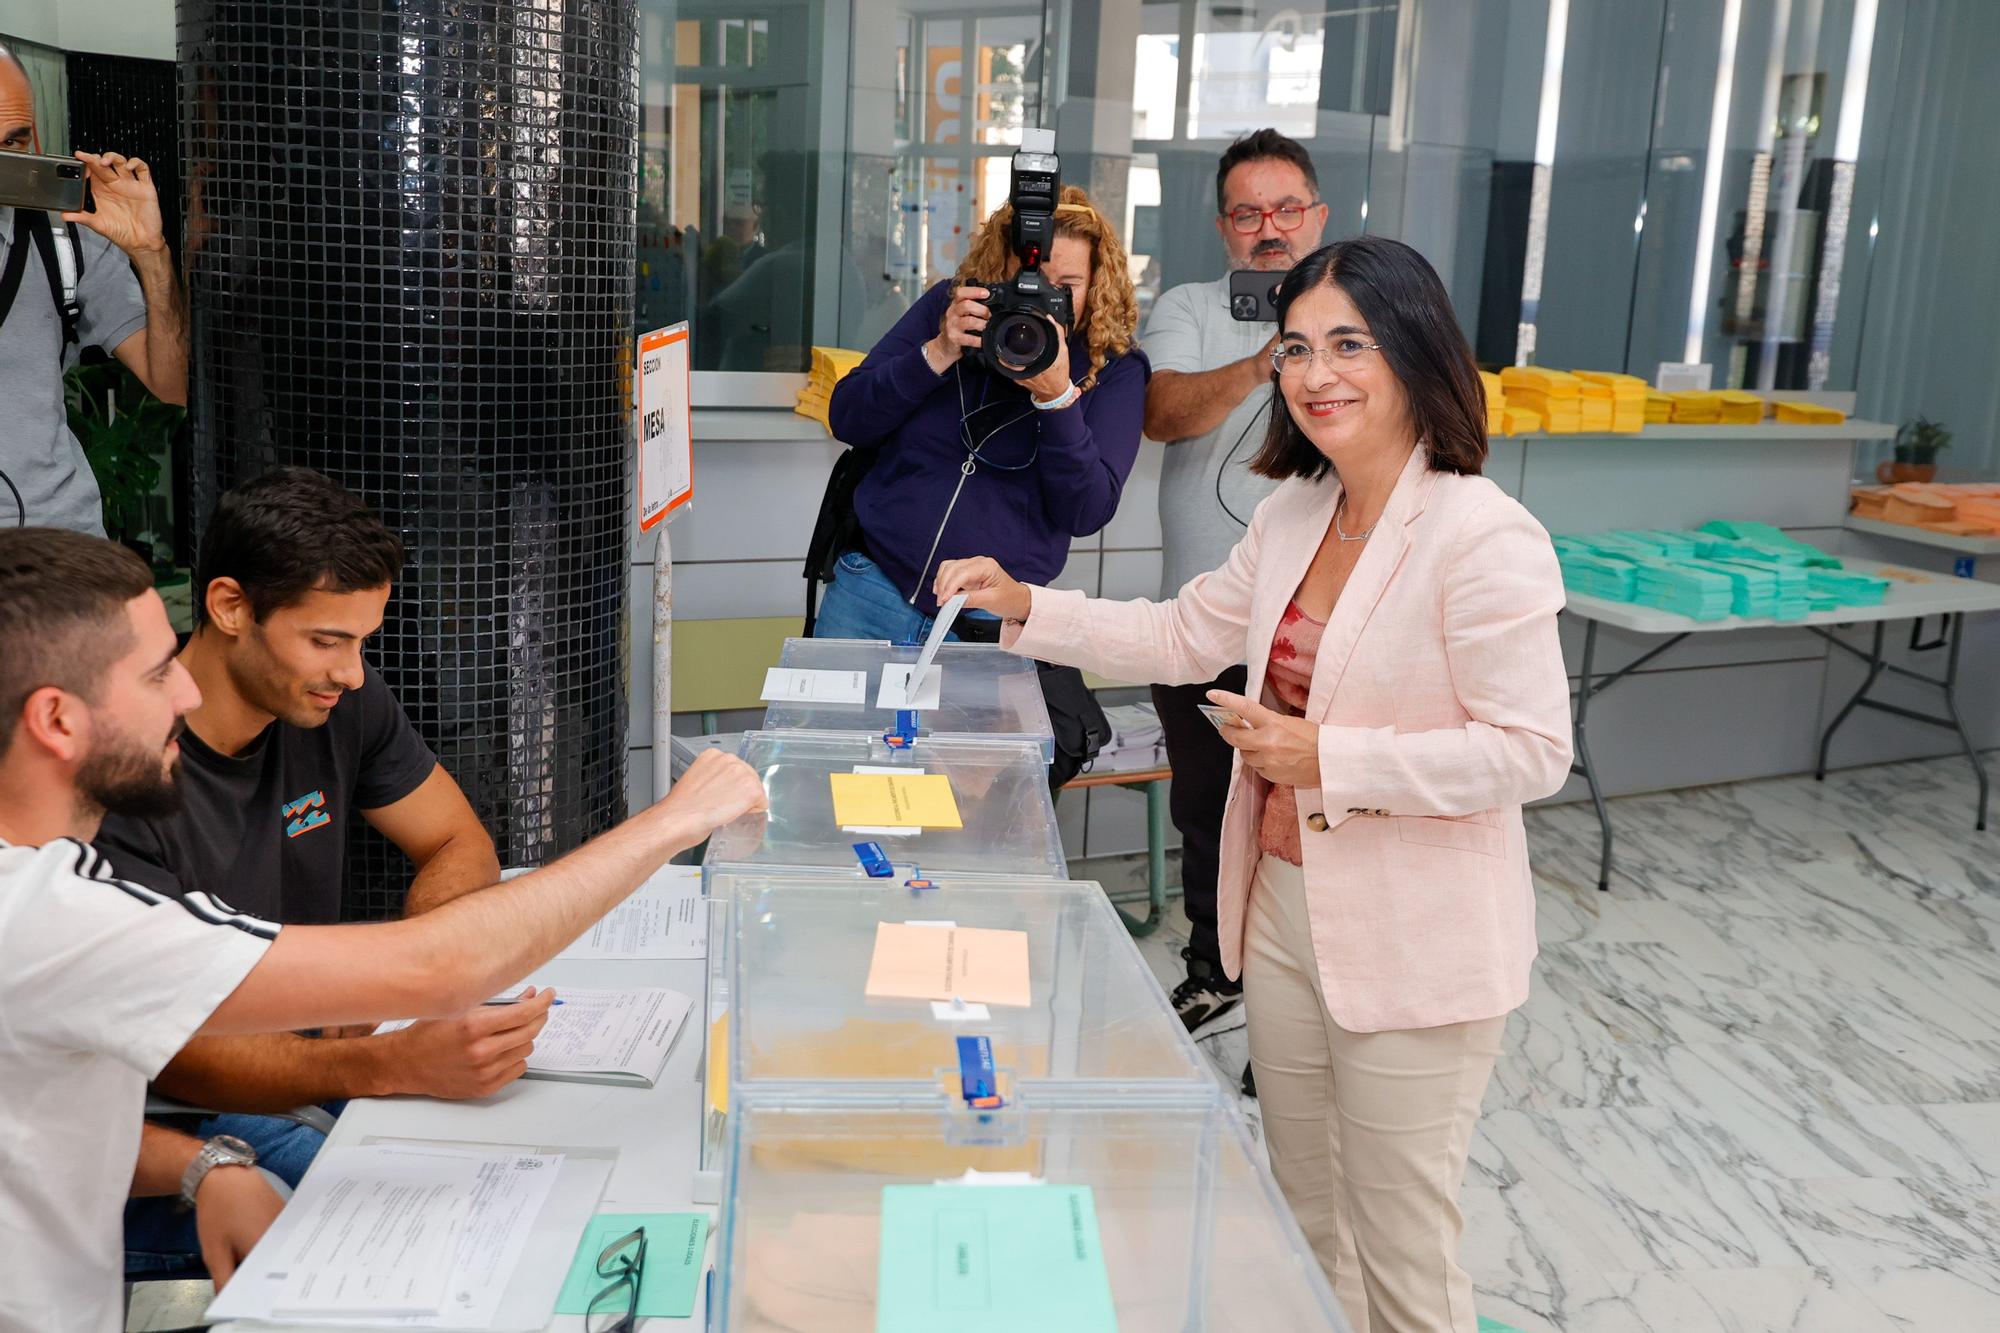 La jornada electoral del 28-M en Canarias, en imágenes